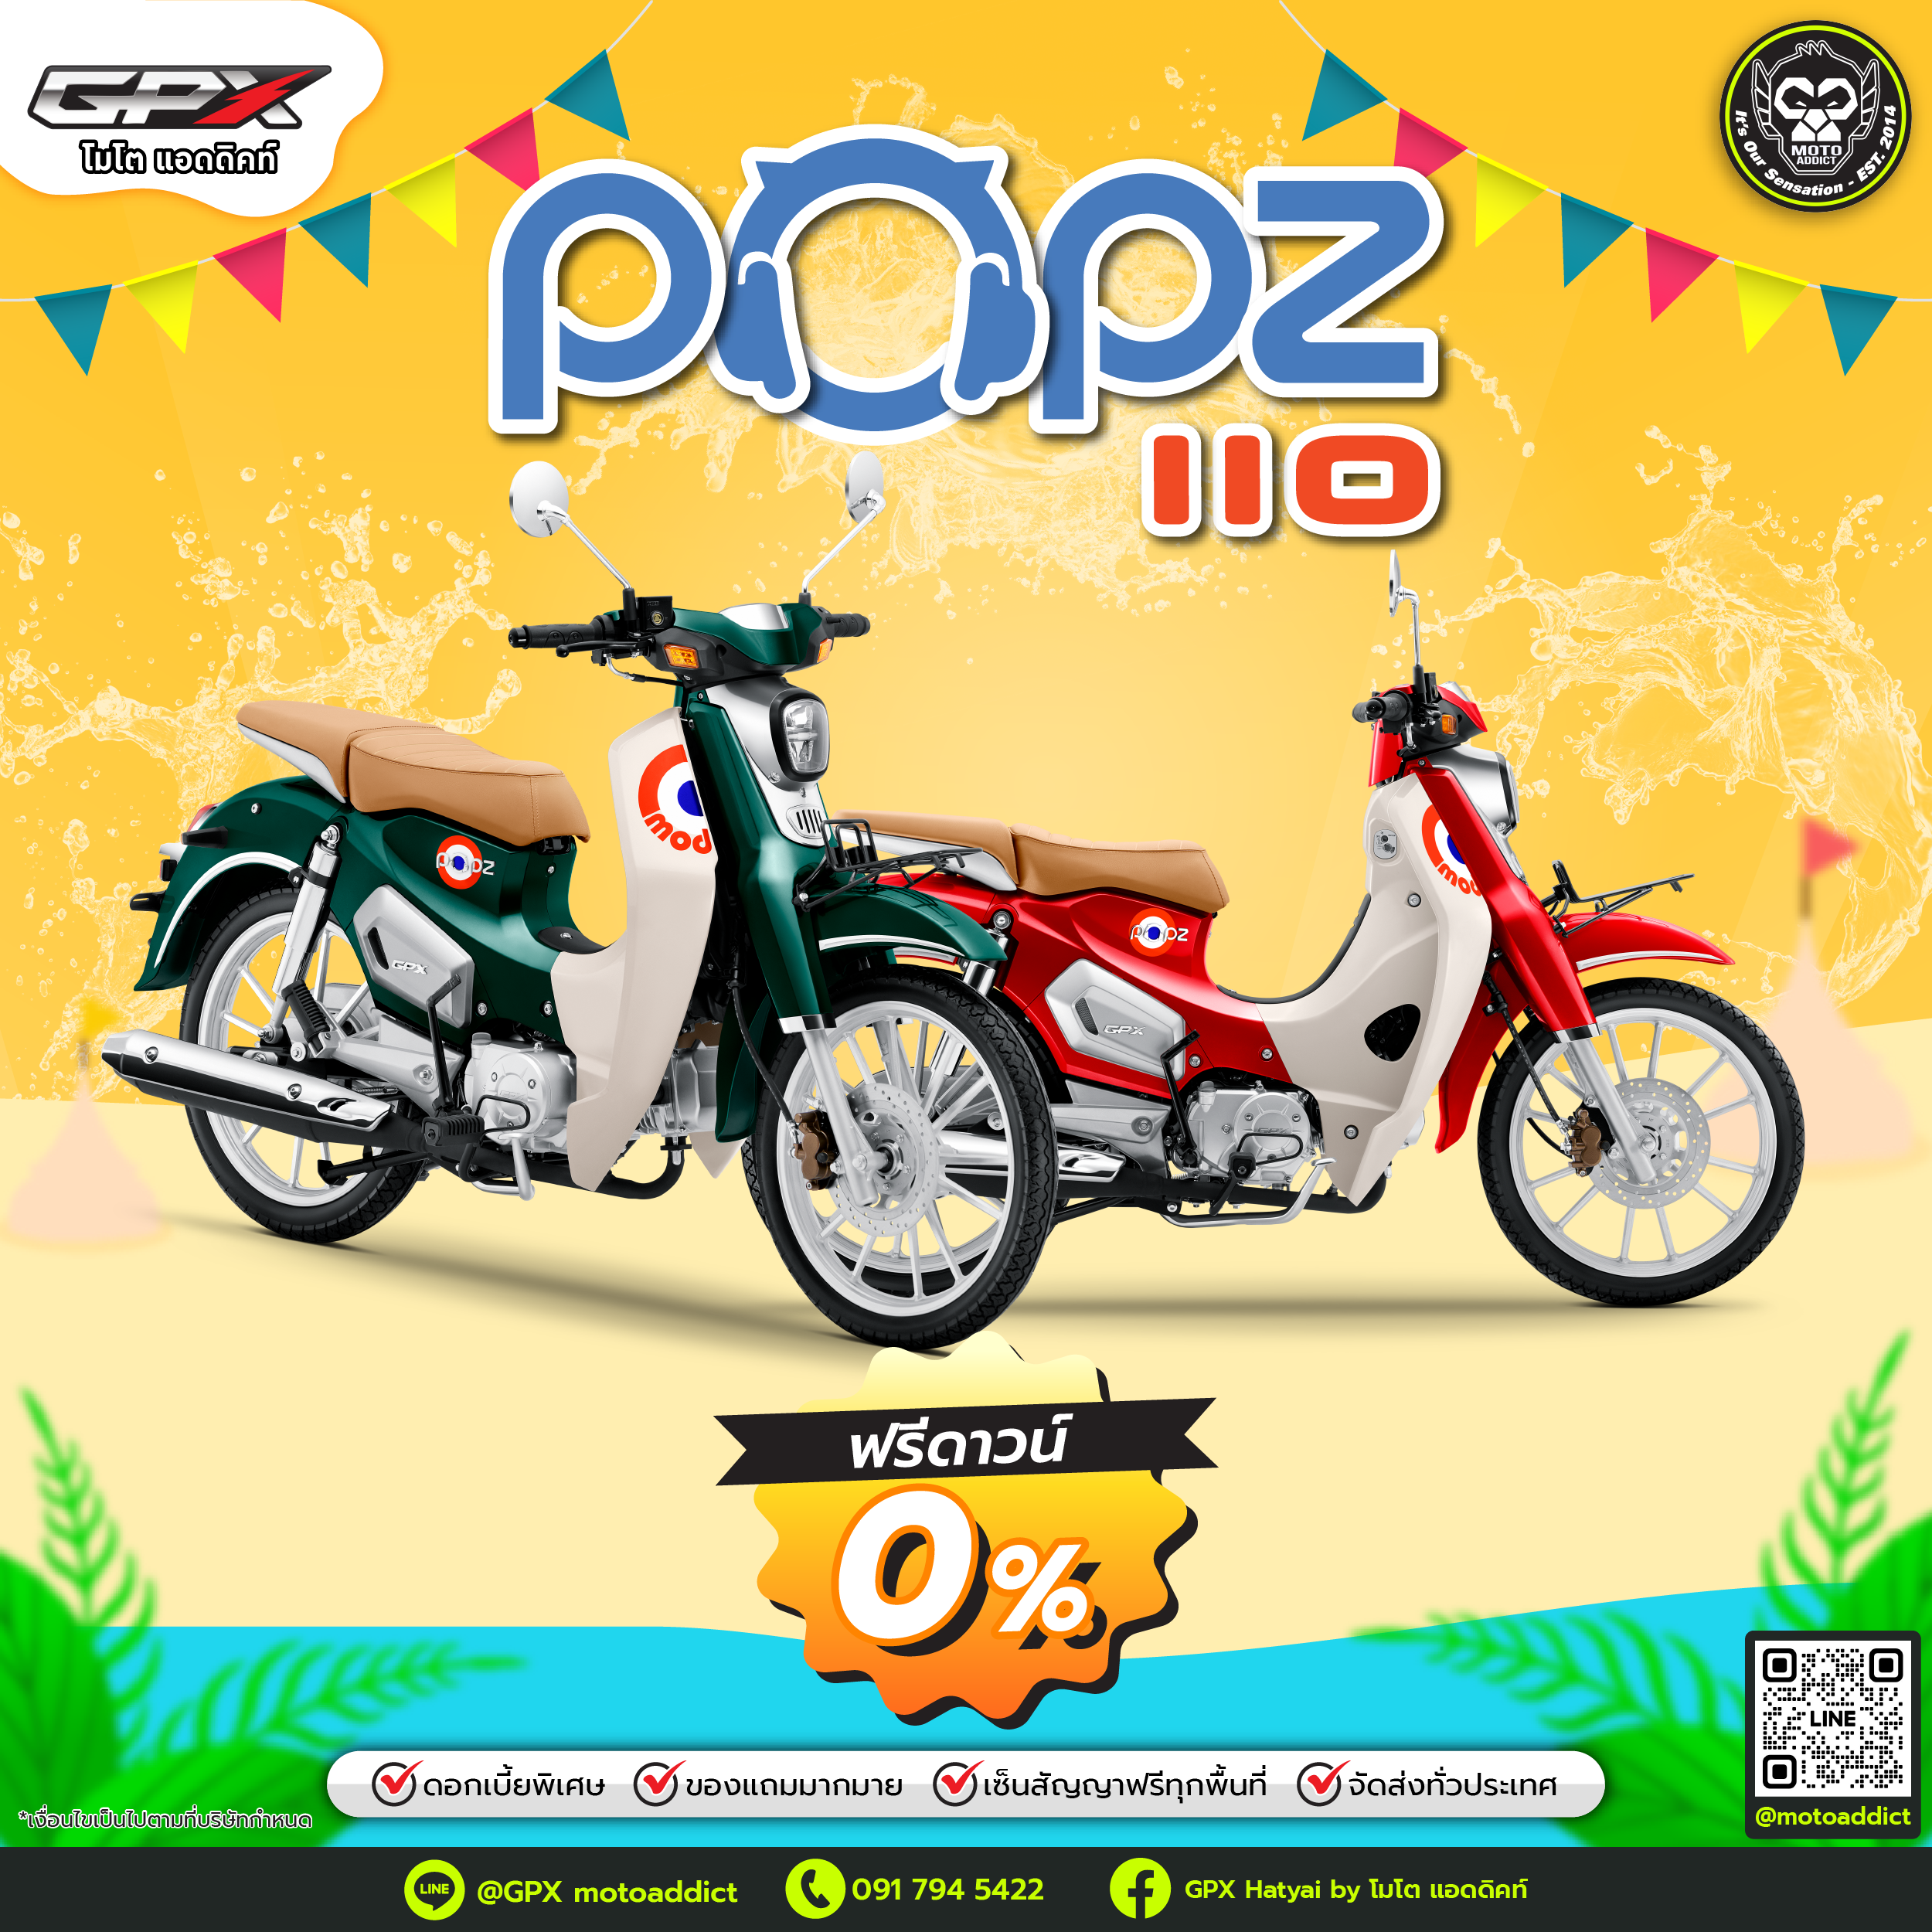 โปรโมชั่นสงกรานต์ GPX POPZ 110